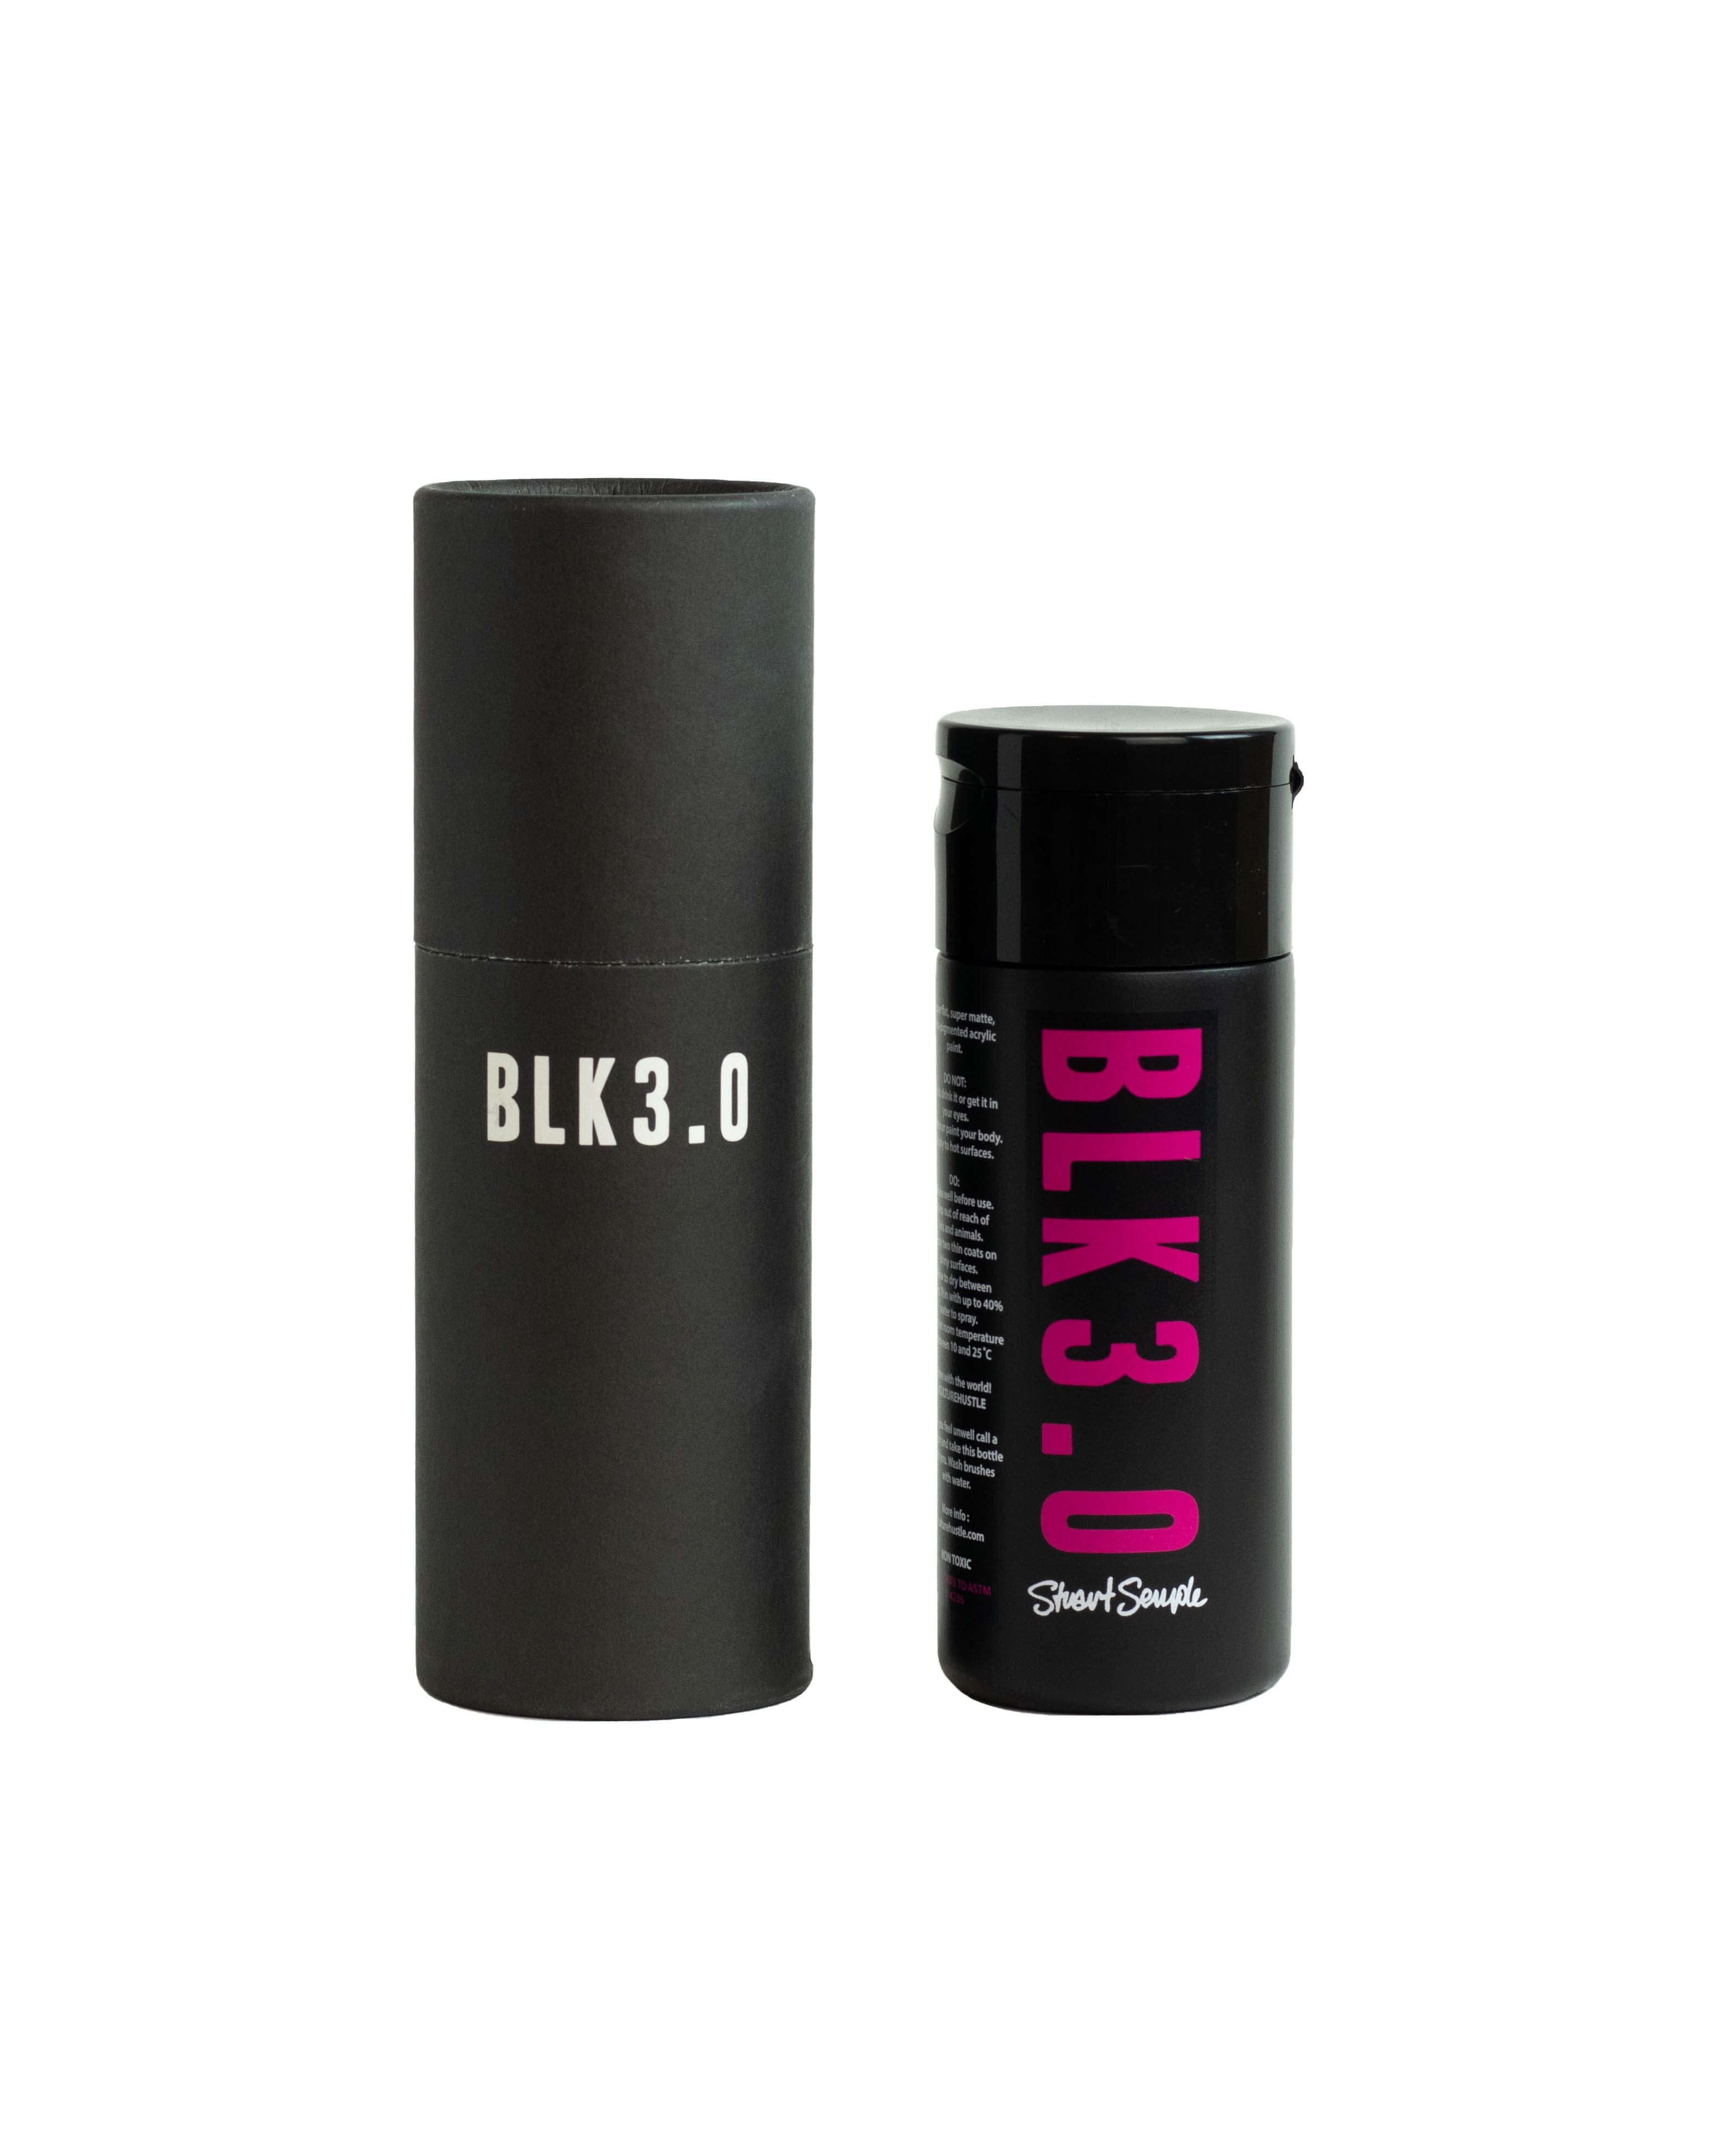 BIG BLACK - *The World's Biggest Blackest Black 3.0 - 33.8 fl oz (1L) –  Culture Hustle USA